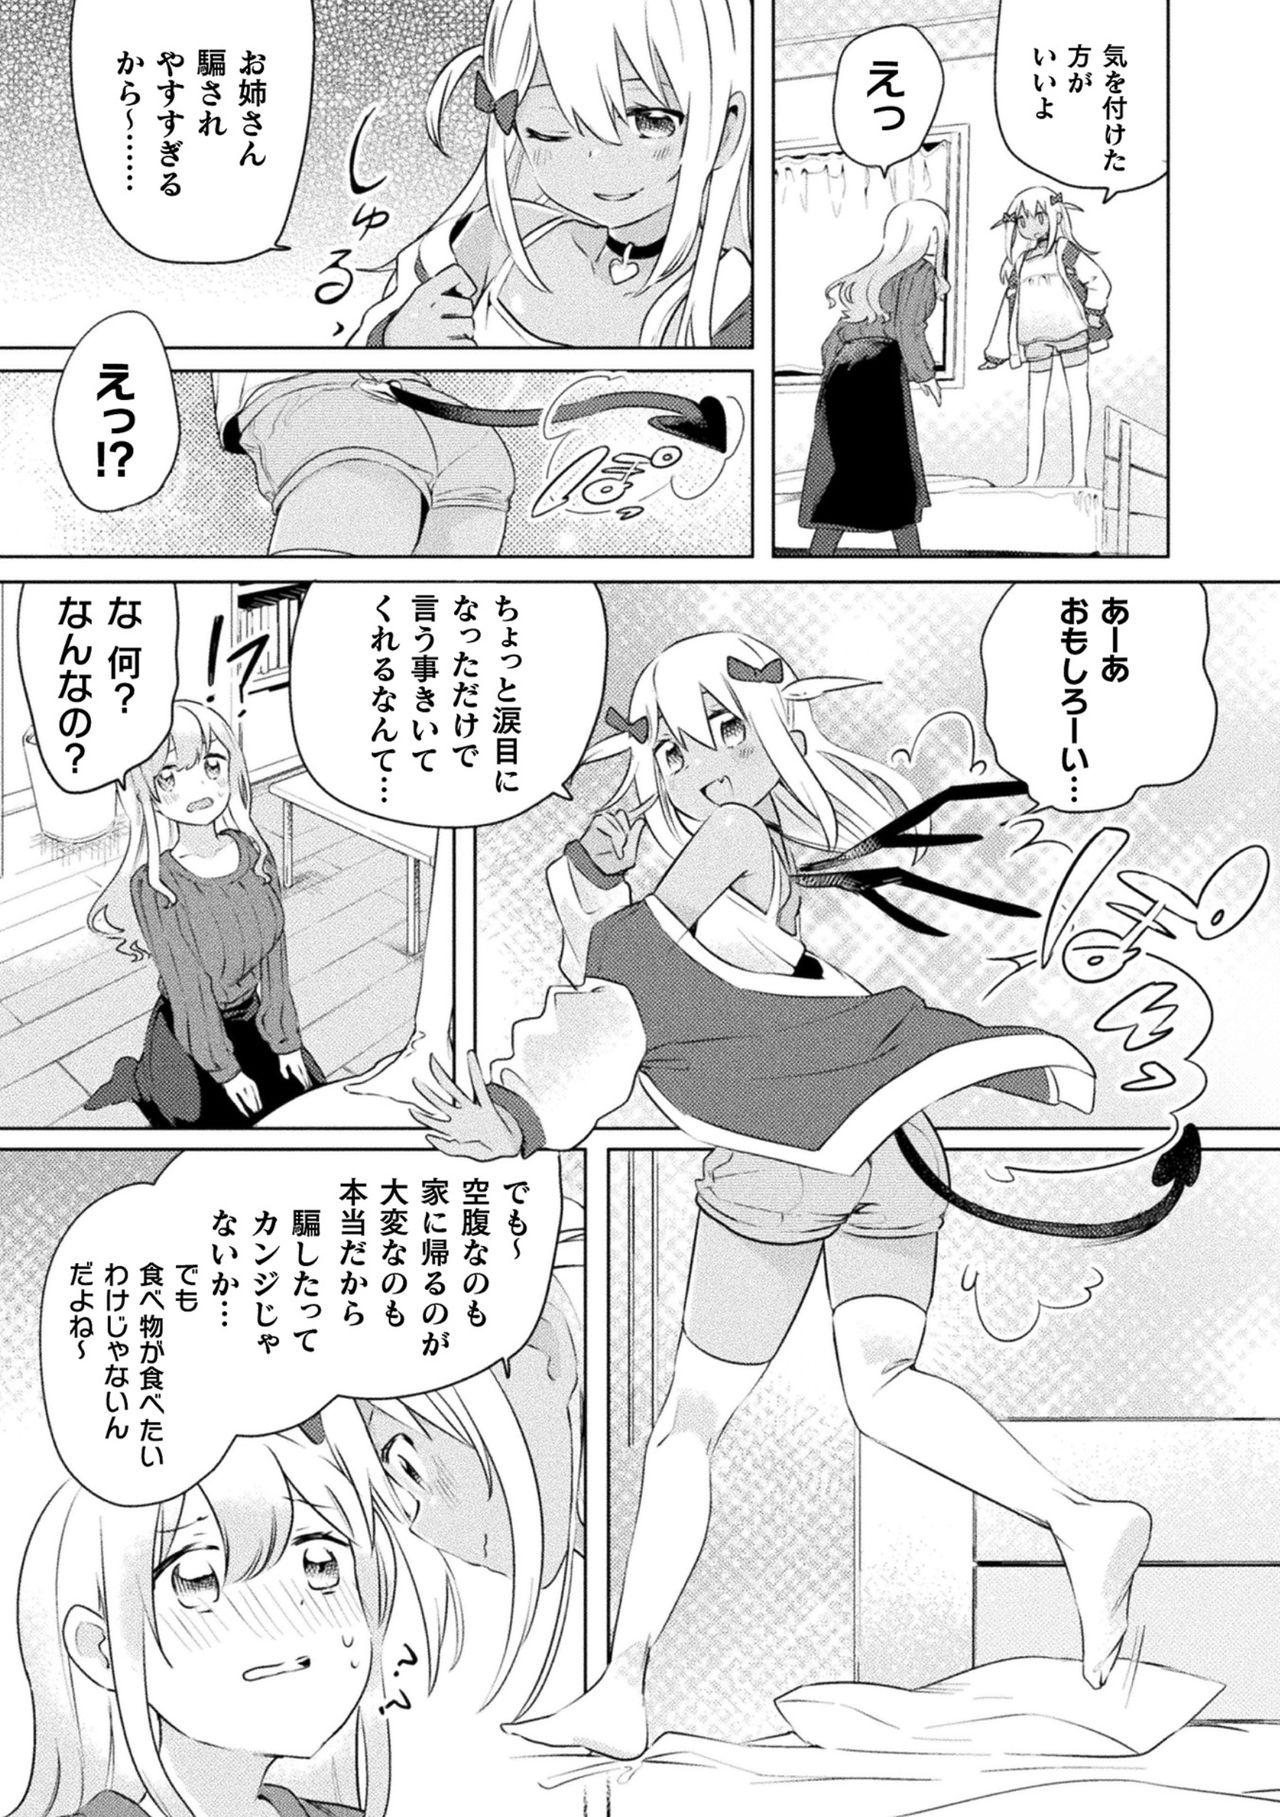 2D Comic Magazine Mesugaki vs Yasashii Onee-san Vol. 1 52